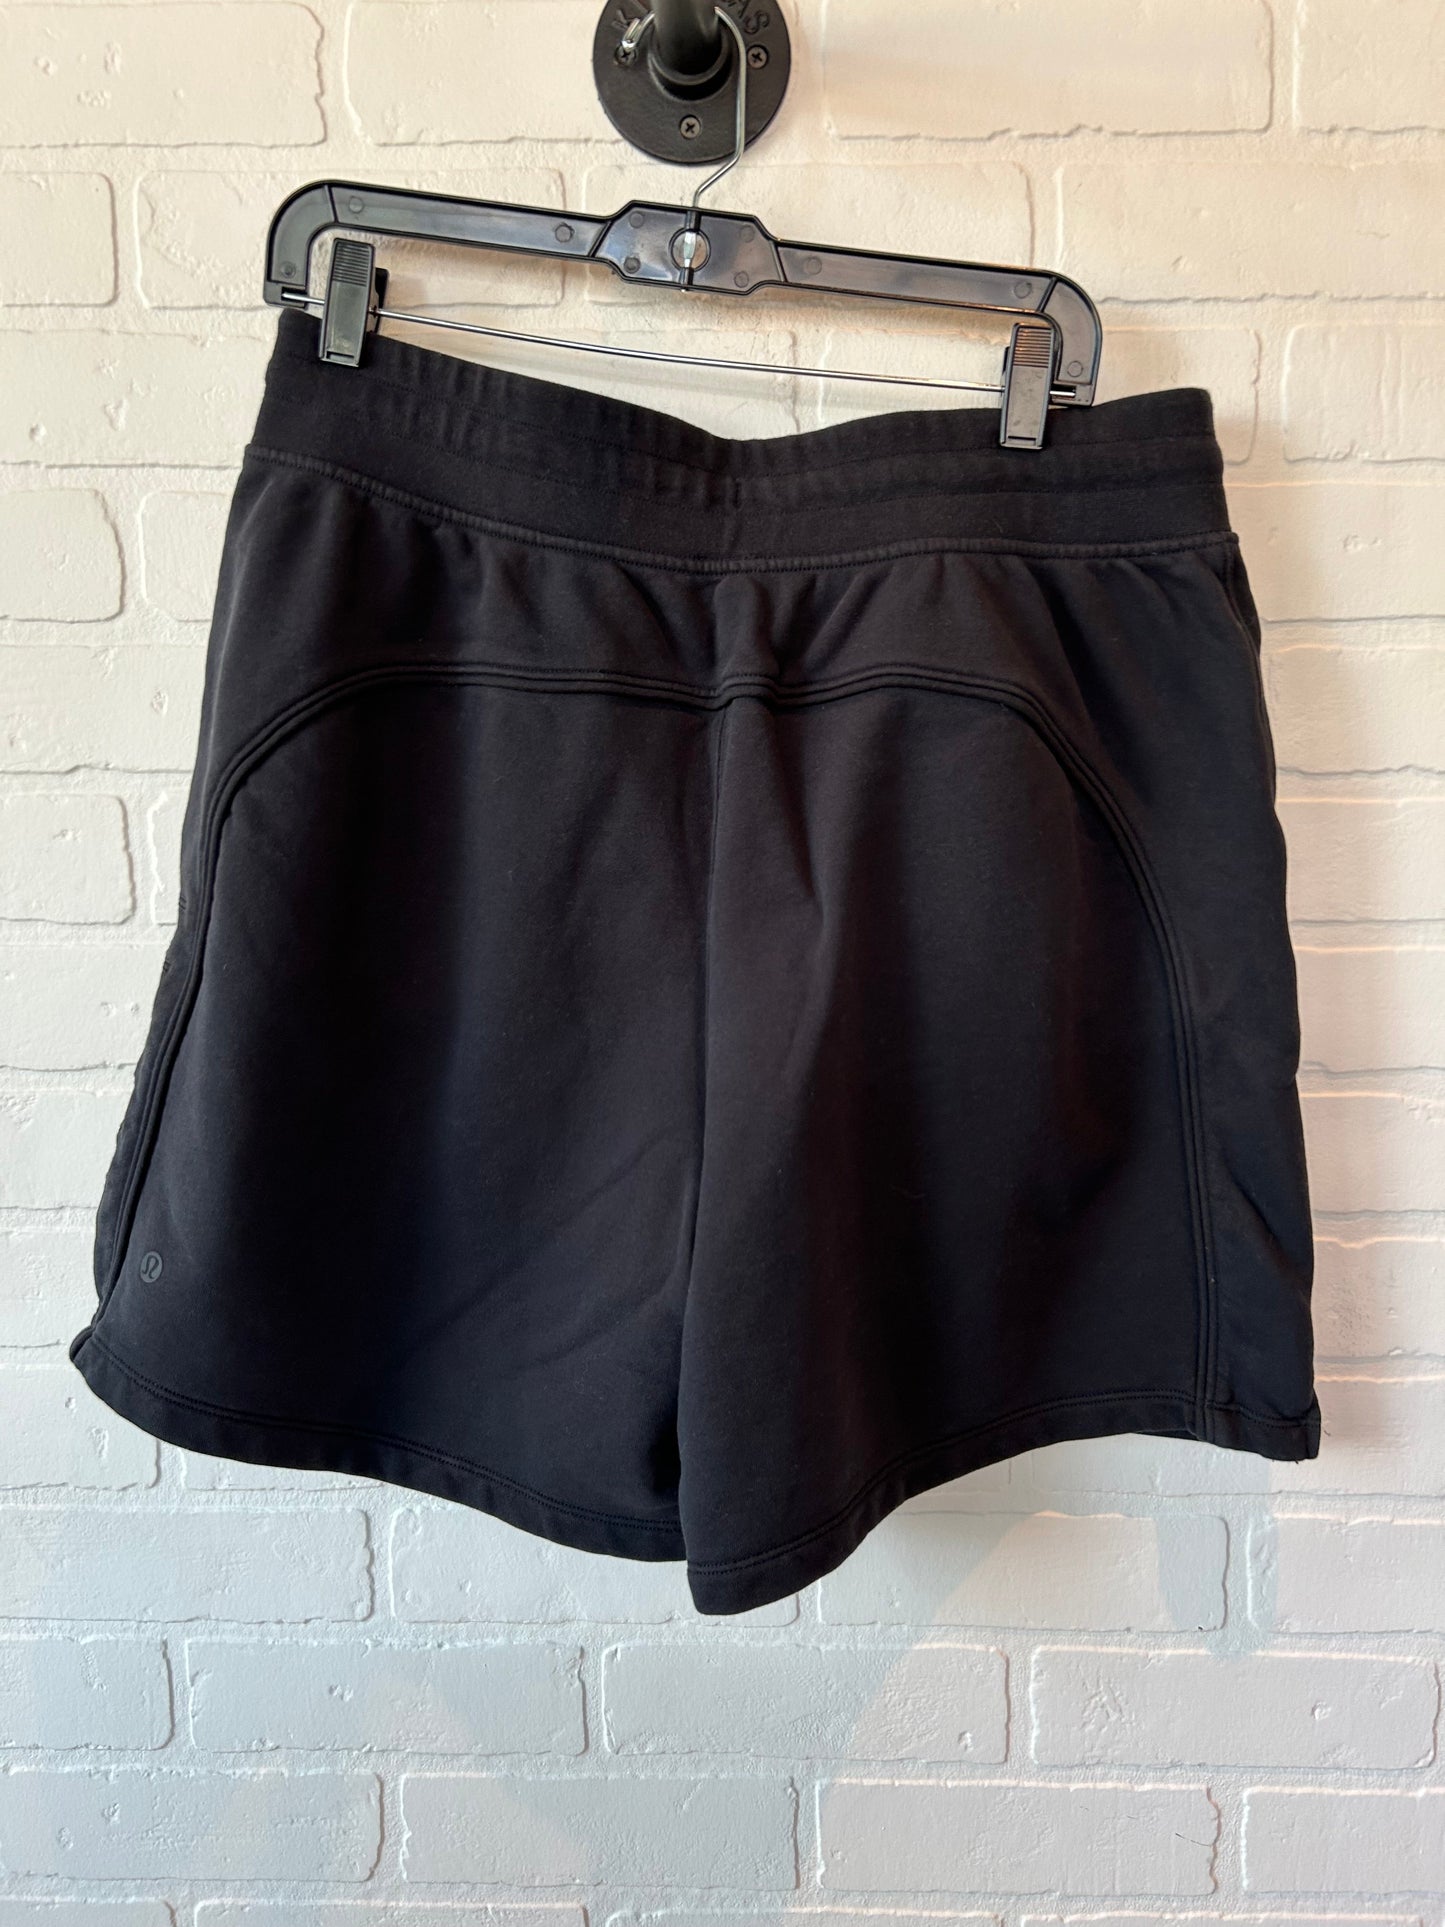 Black Athletic Shorts Lululemon, Size 12